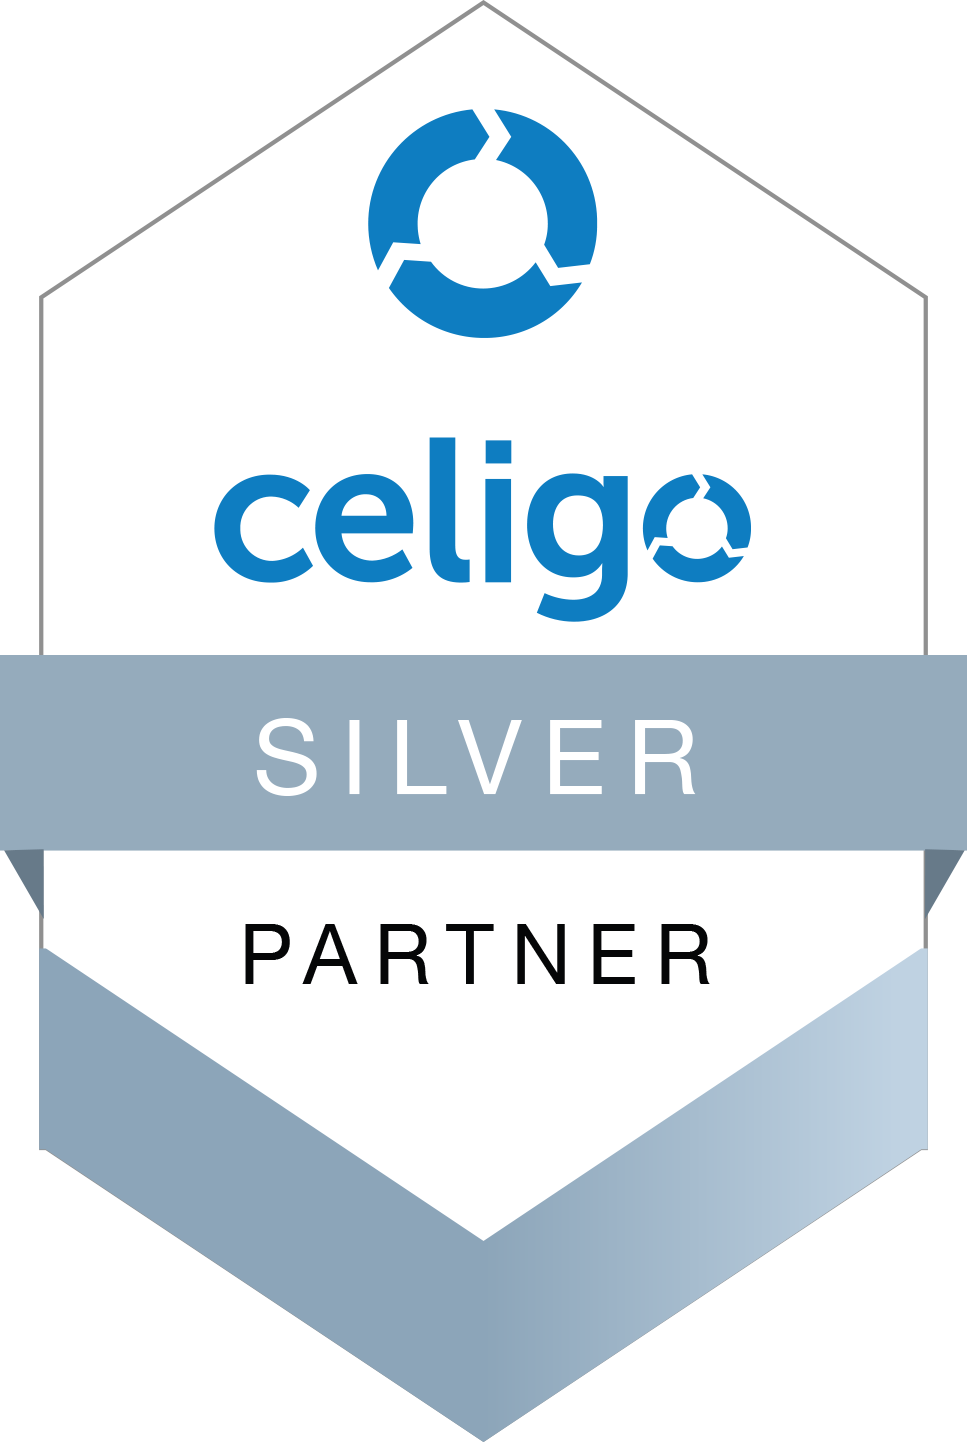 celigo silver partner badge